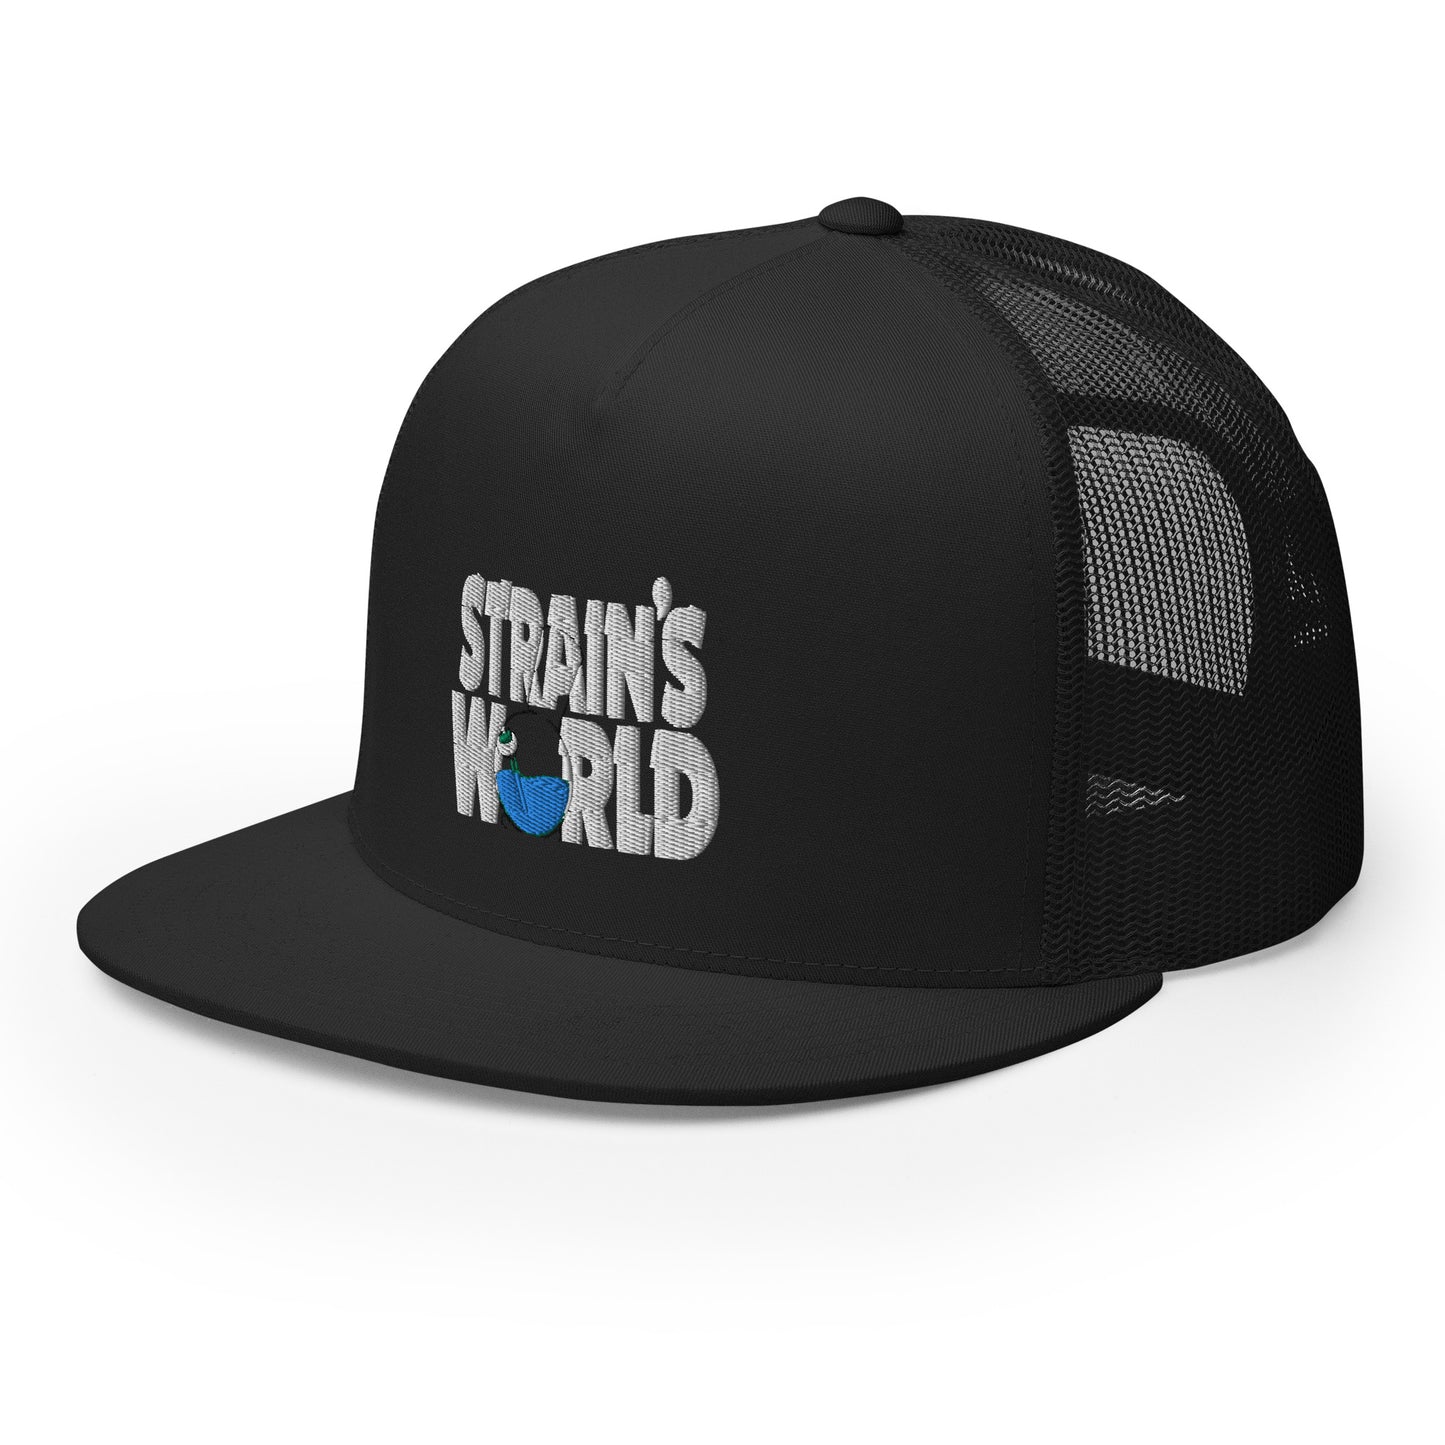 Strain's World Trucker Hat